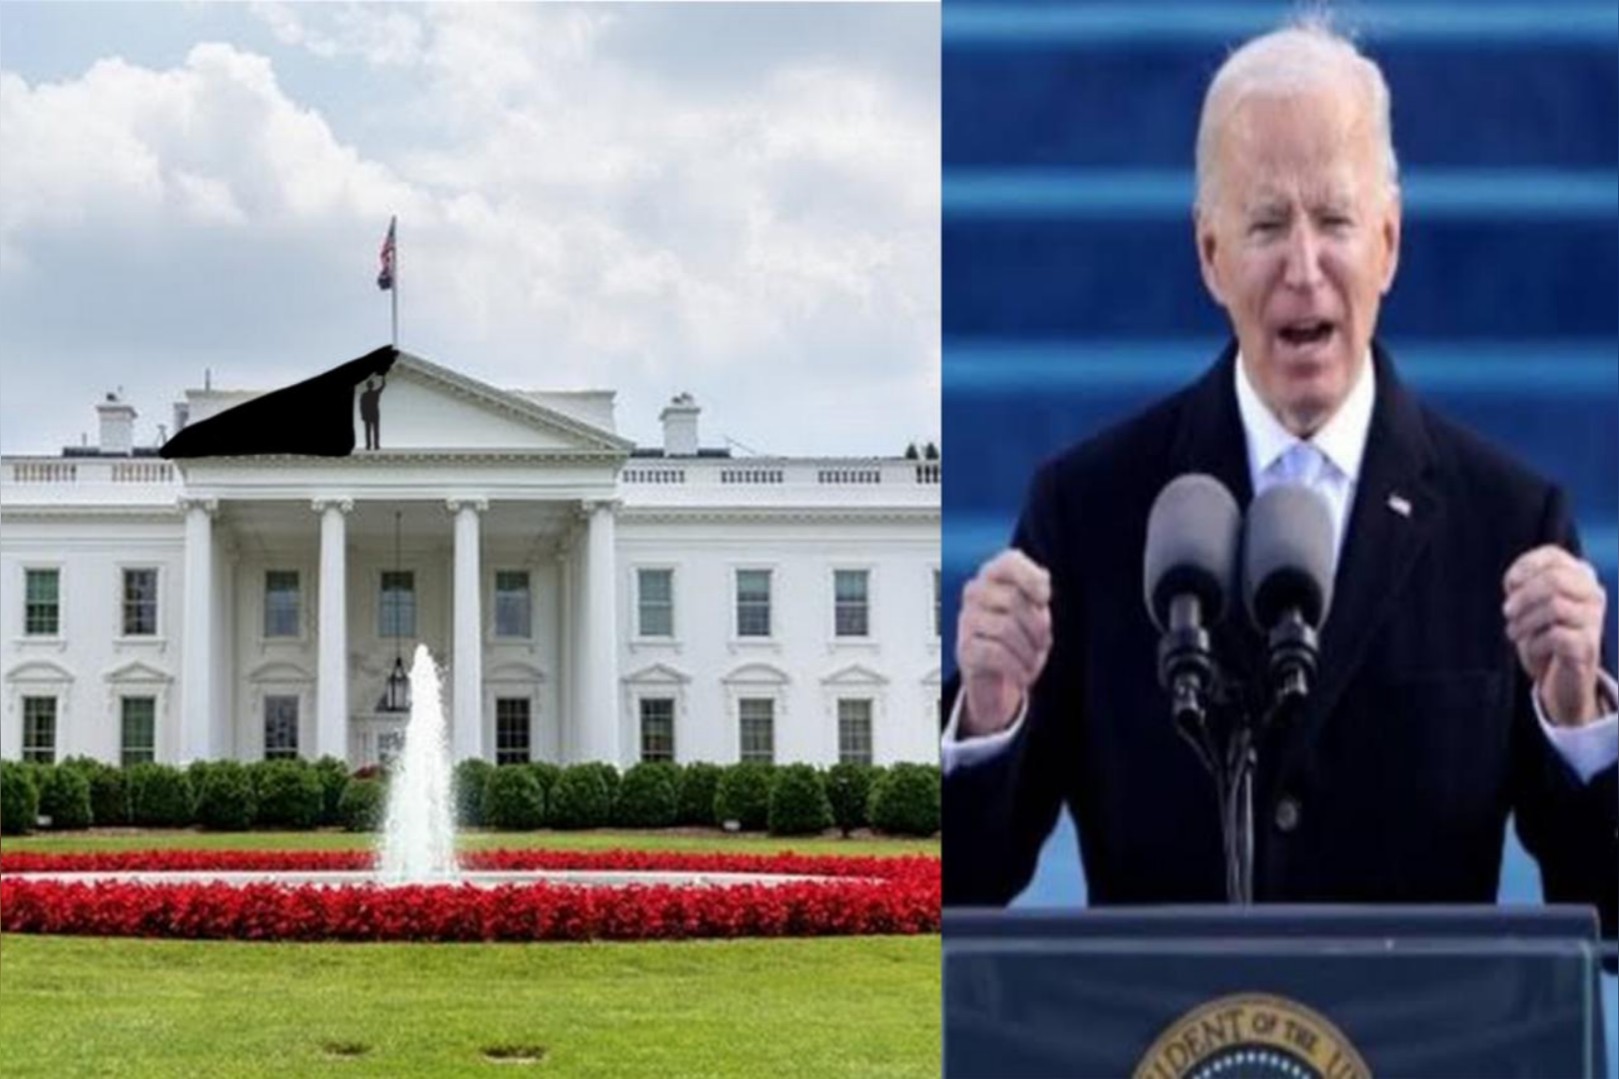 Joe Biden To Rename White House To Black House To End Racism